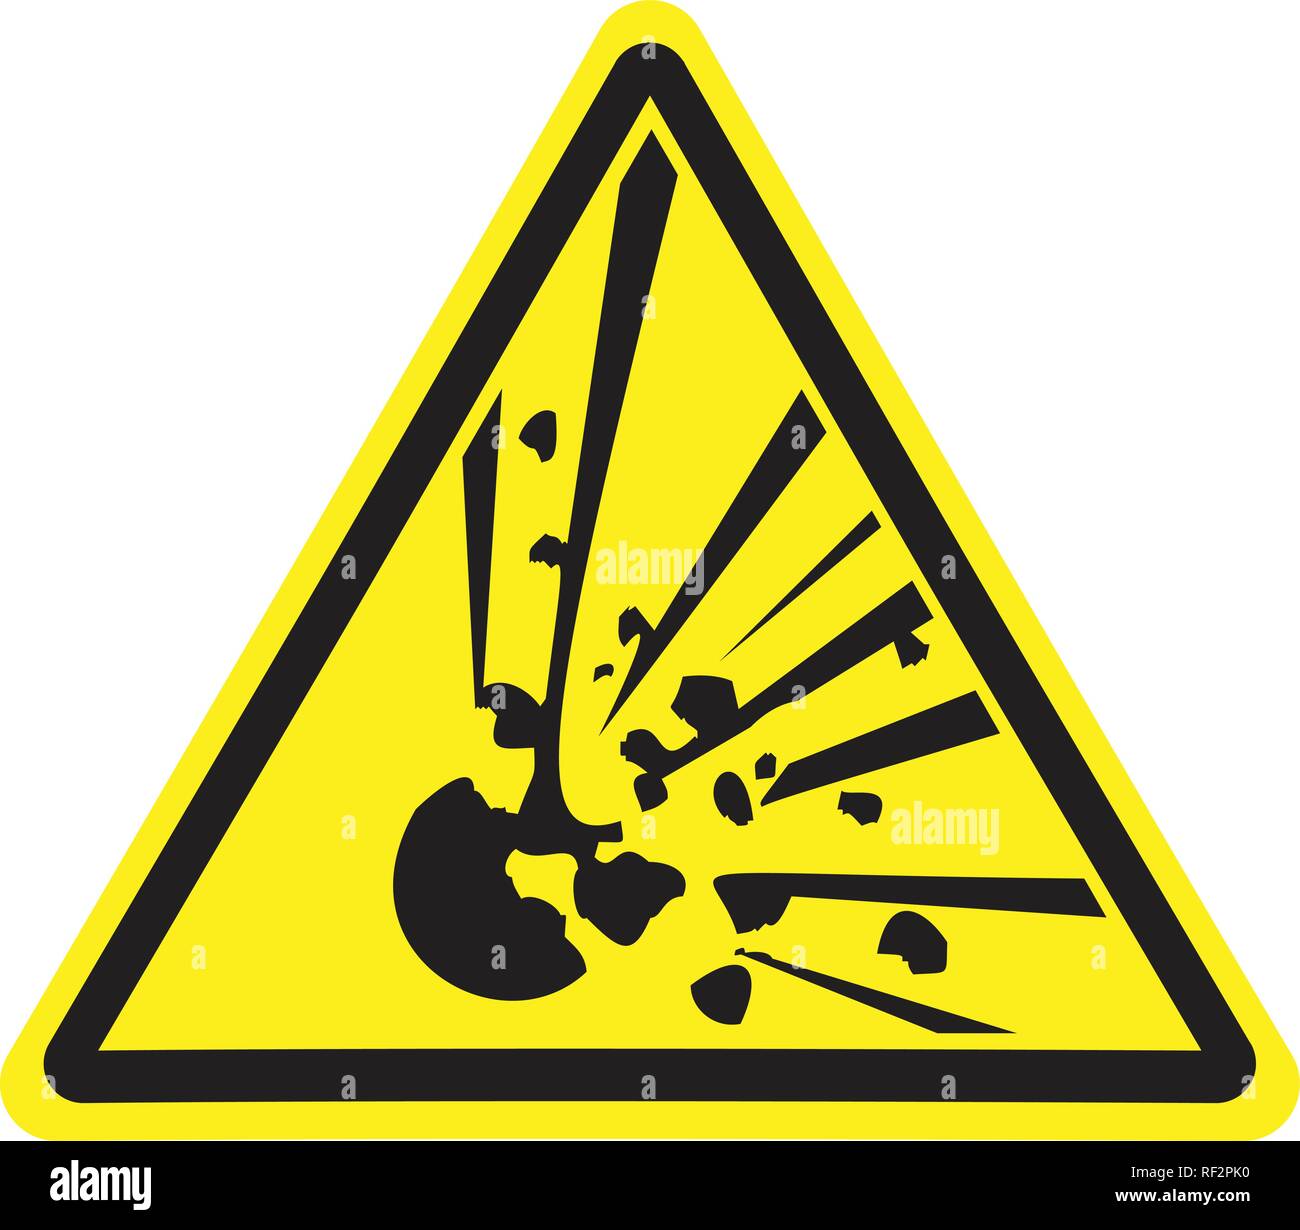 Explosiv. Achtung Gefahr. Gelbes Dreieck. Zeichen für Collage auf weißem Hintergrund. Stock Vektor